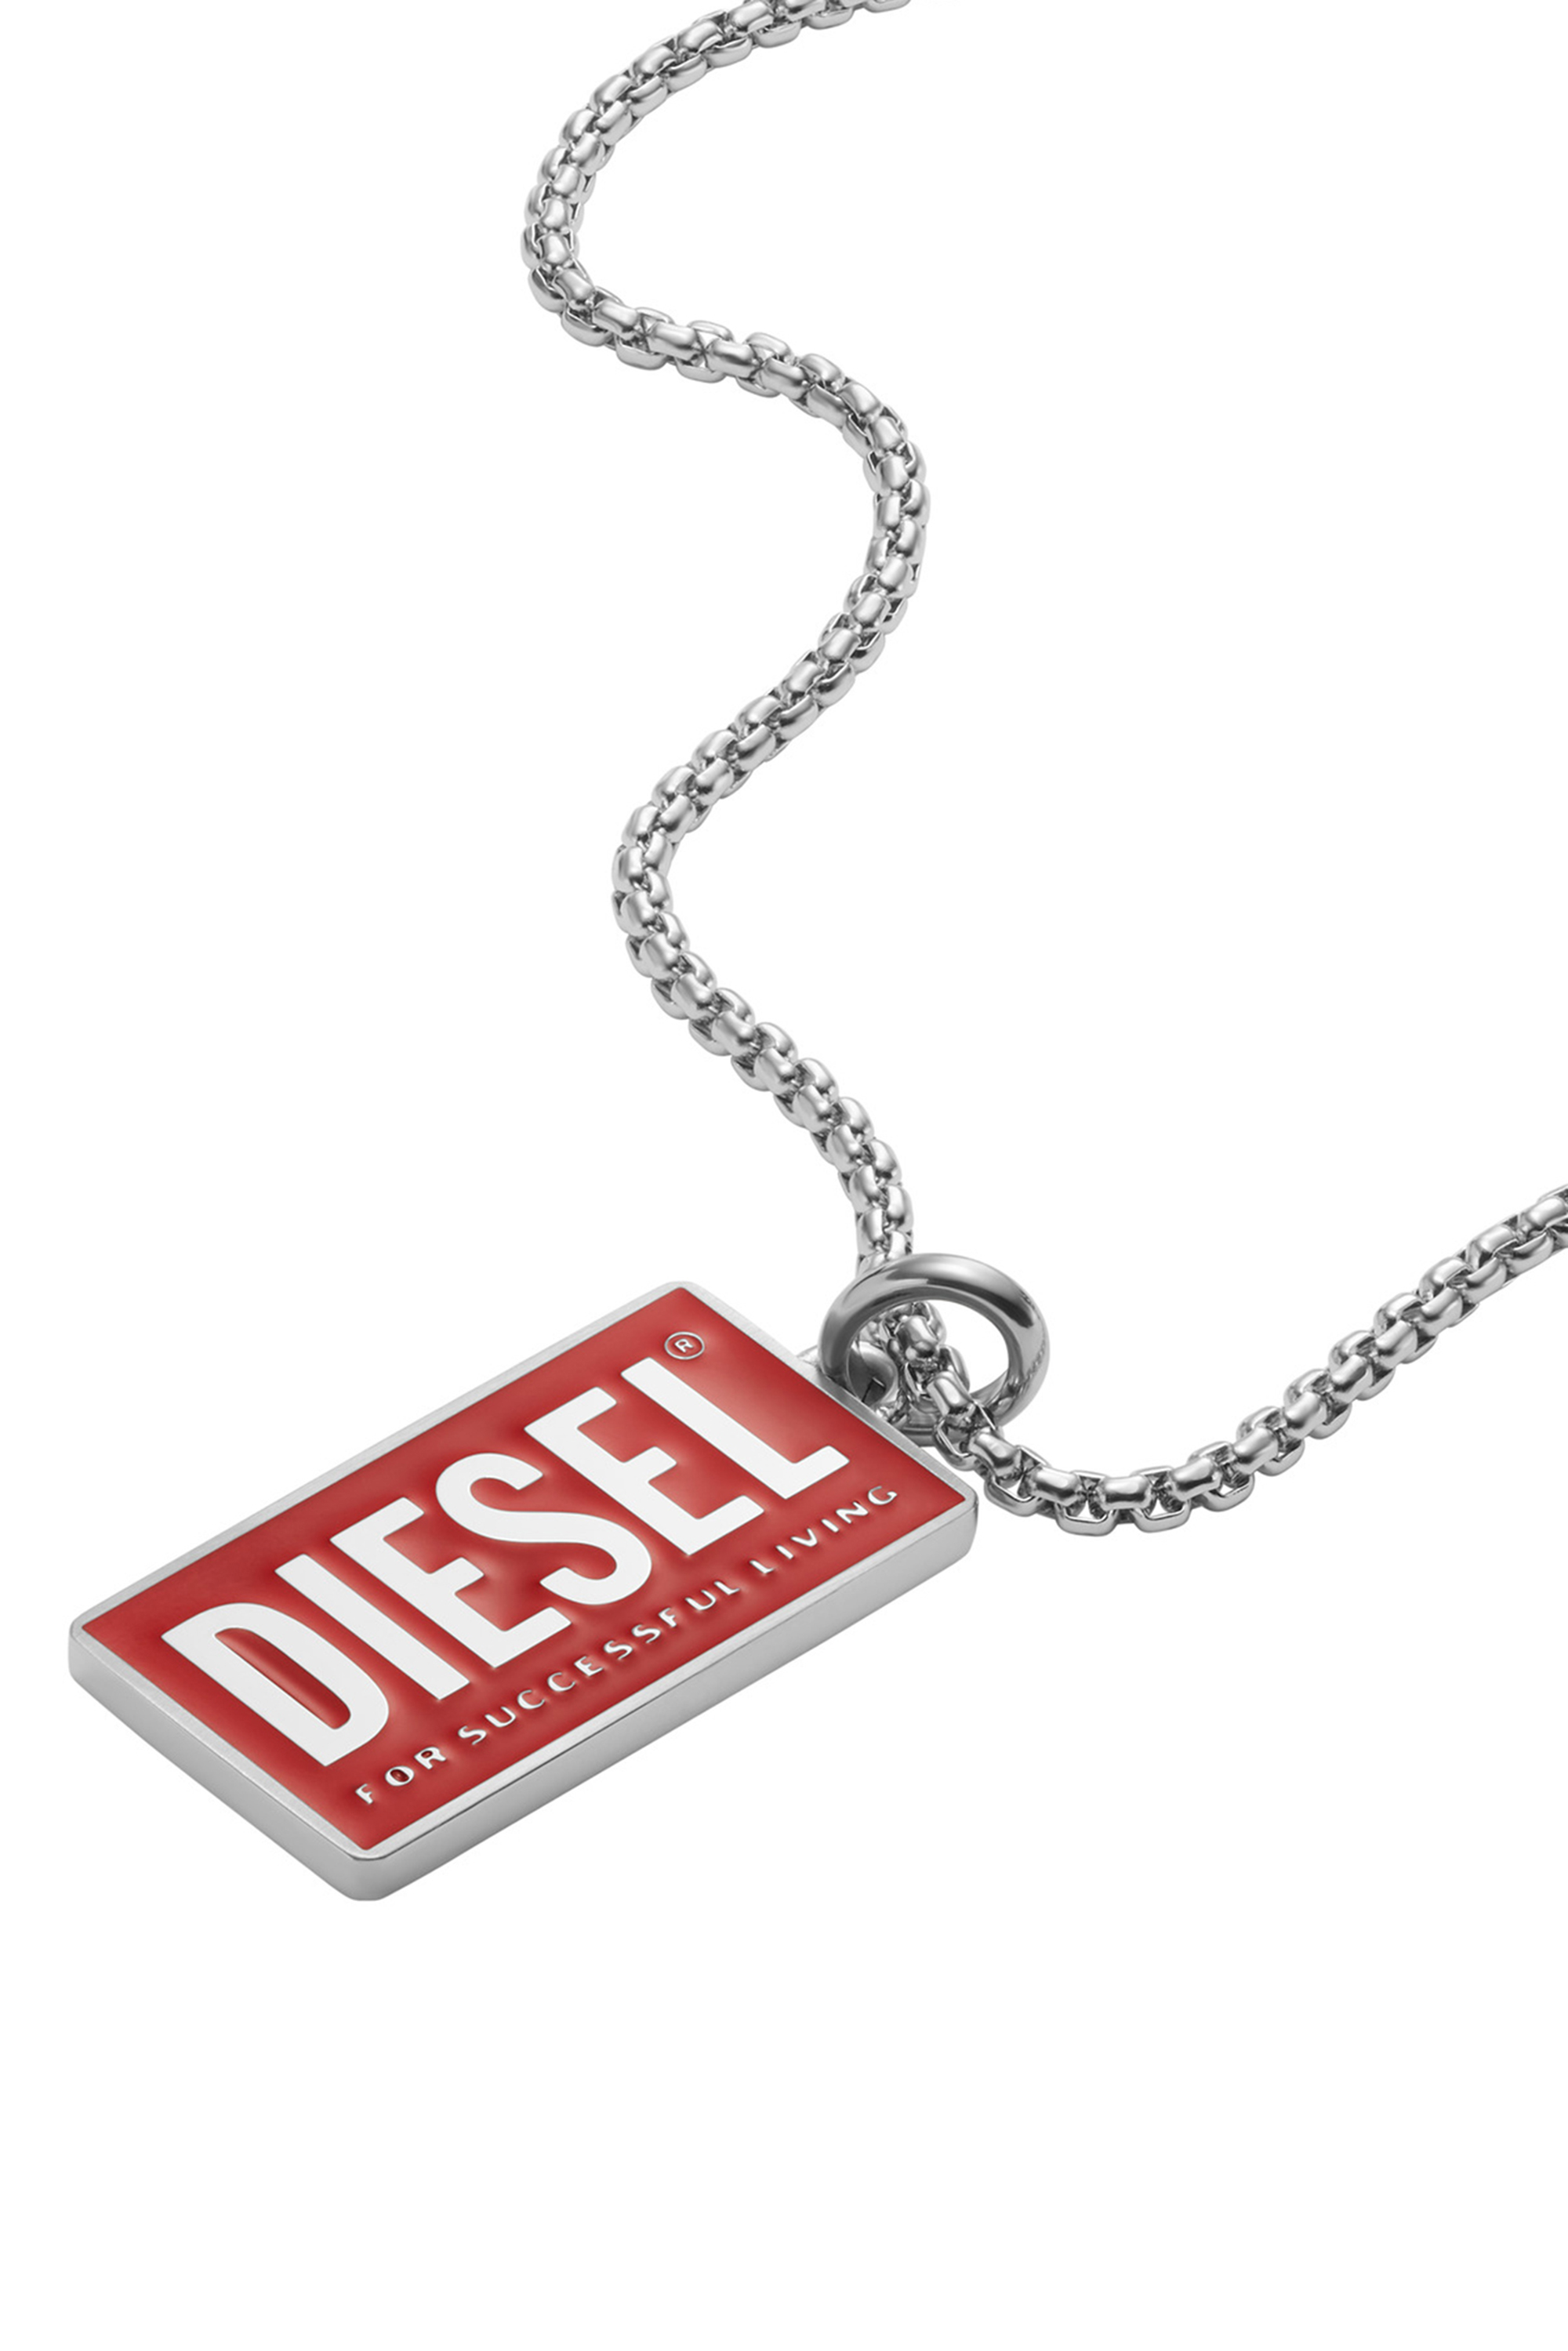 Visiter la boutique DIESELCollier Homme Diesel DX1210040 Acier Inoxydable argenté 69 cm 